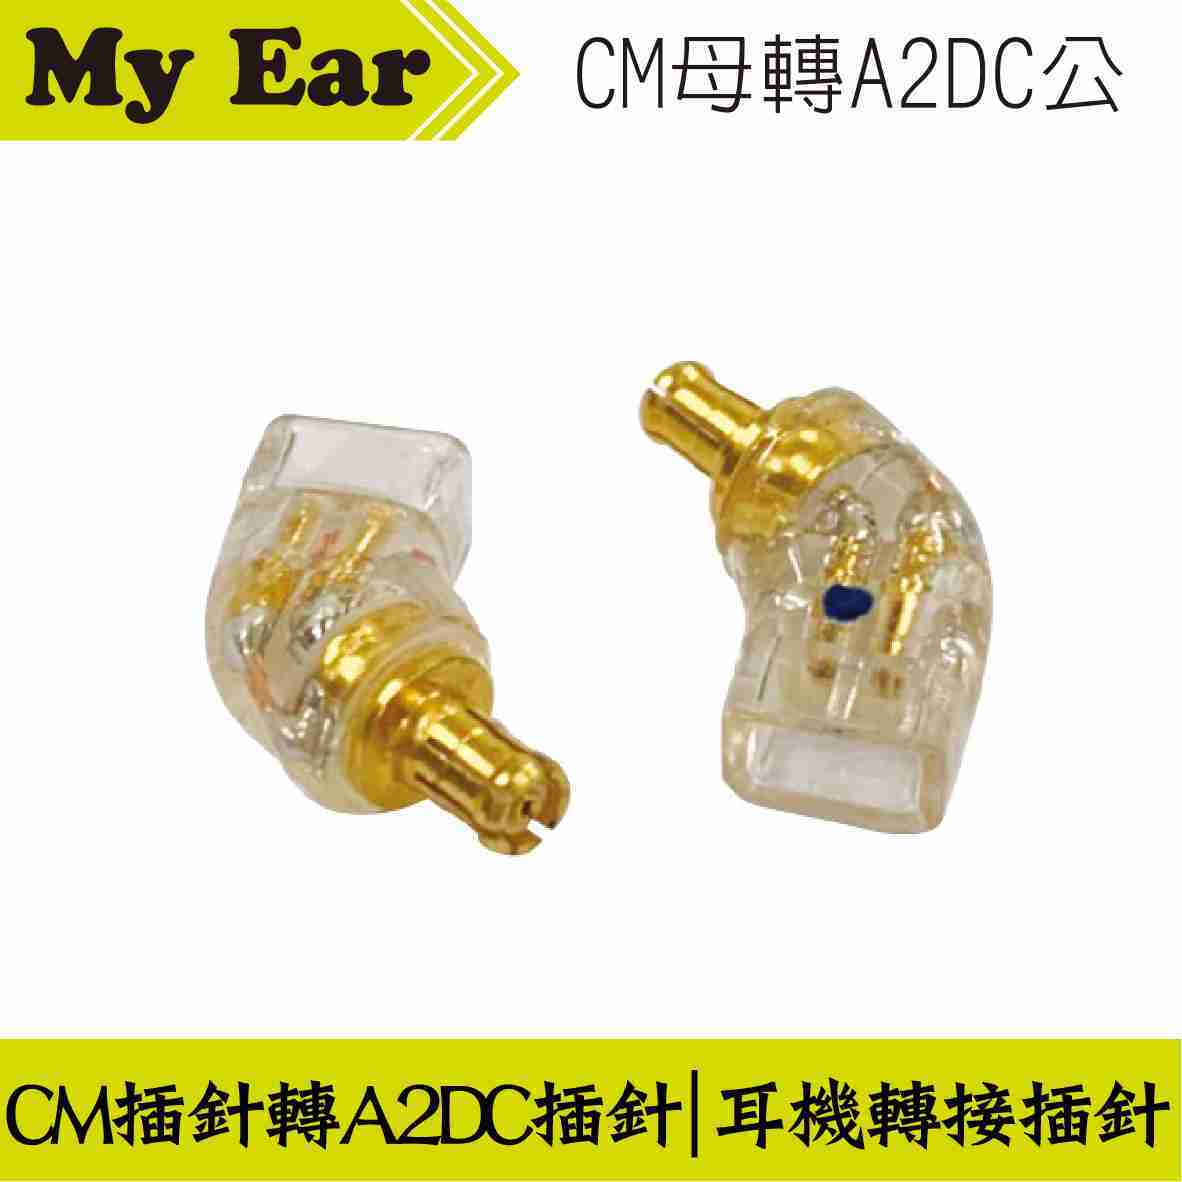 耳機 轉接頭 CM插針母轉A2DC插針公 | My Ear 耳機專門店